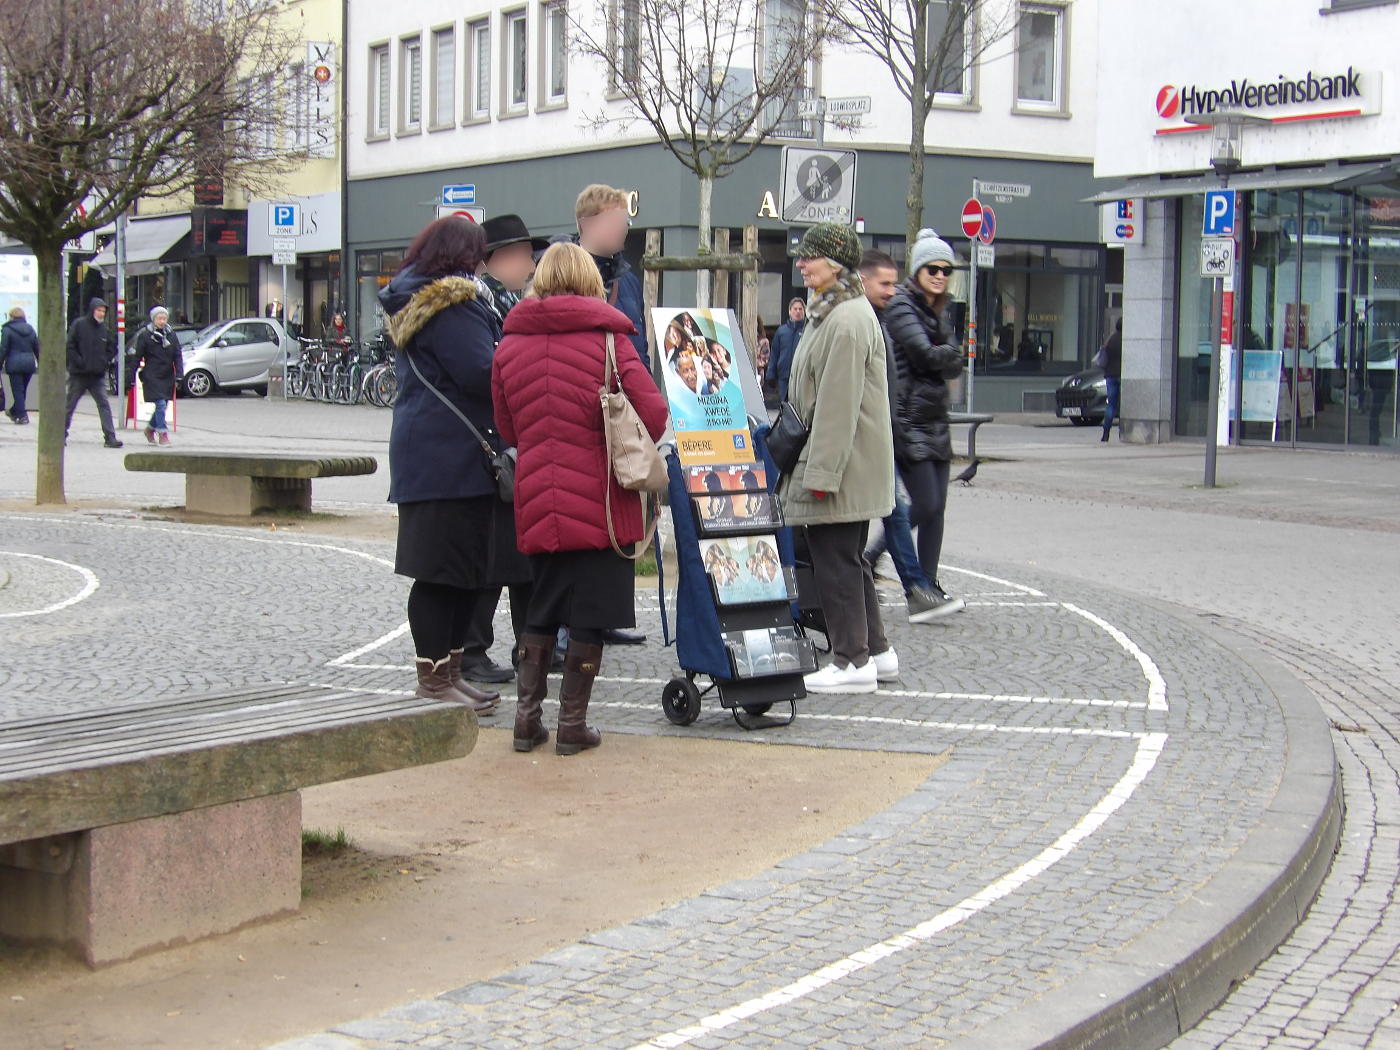 Darmstadt: kein Kannibalismus – Jehovas Zeugen leugnen, leugnen, leugnen